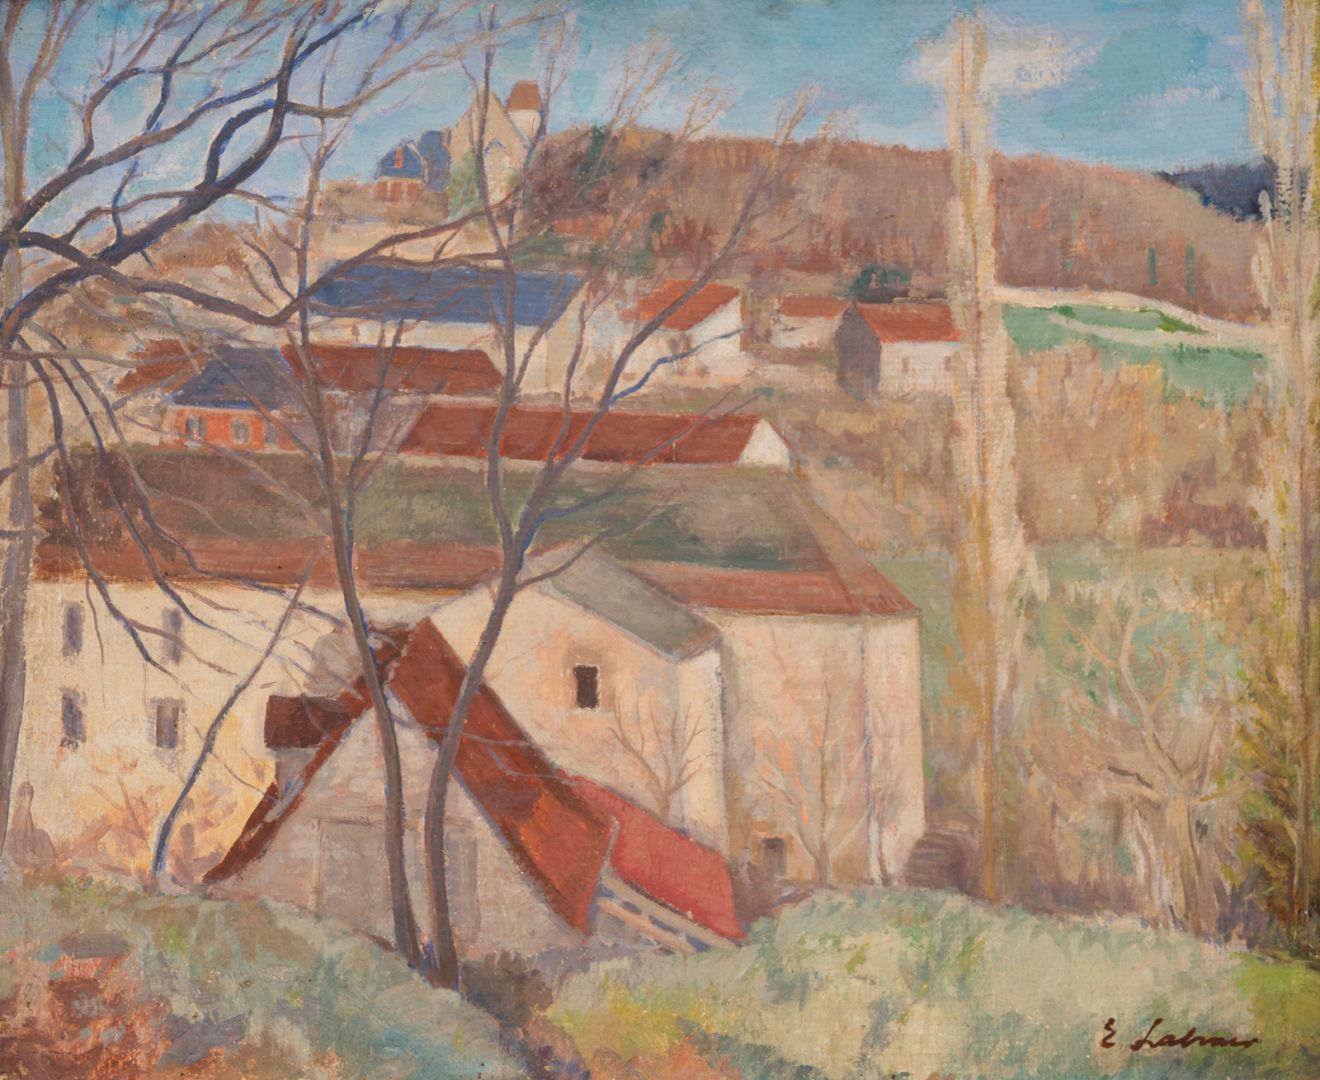 Null 埃米尔-拉赫纳(Emile LAHNER) (1893-1980)

红色屋顶

板面油画，右下角有签名

60 x 73厘米。